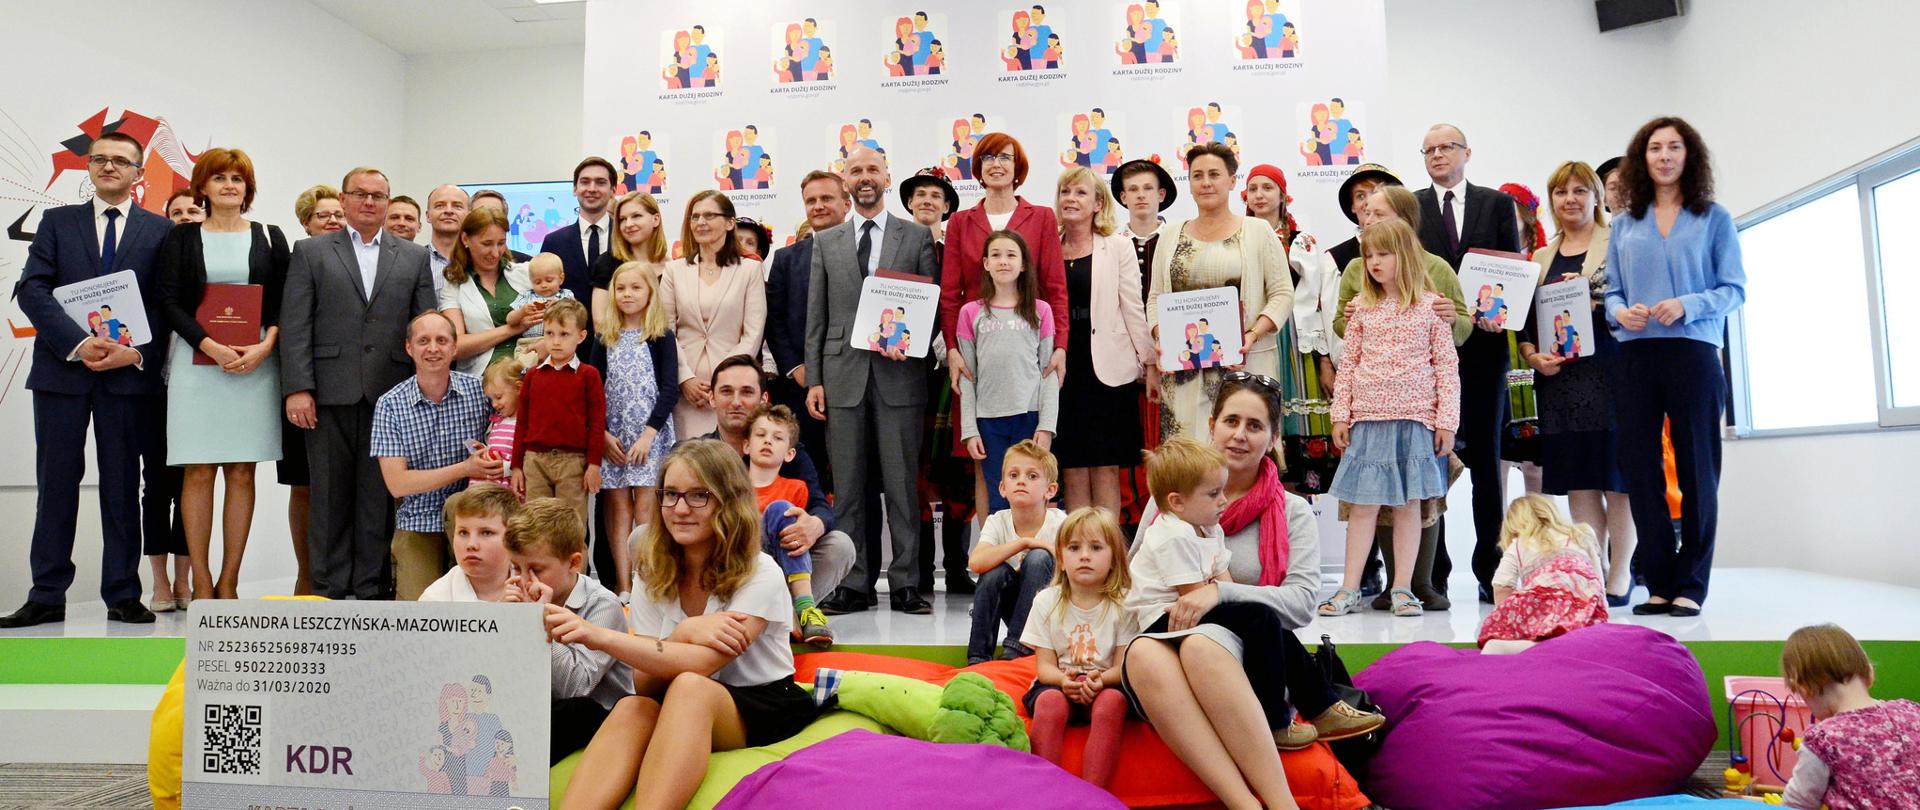 Podpisanie umów z nowymi partnerami Karty Dużej Rodziny. Wspólne zdjęcie uczestników wydarzenia z minister rodziny Elżbietą Rafalską.